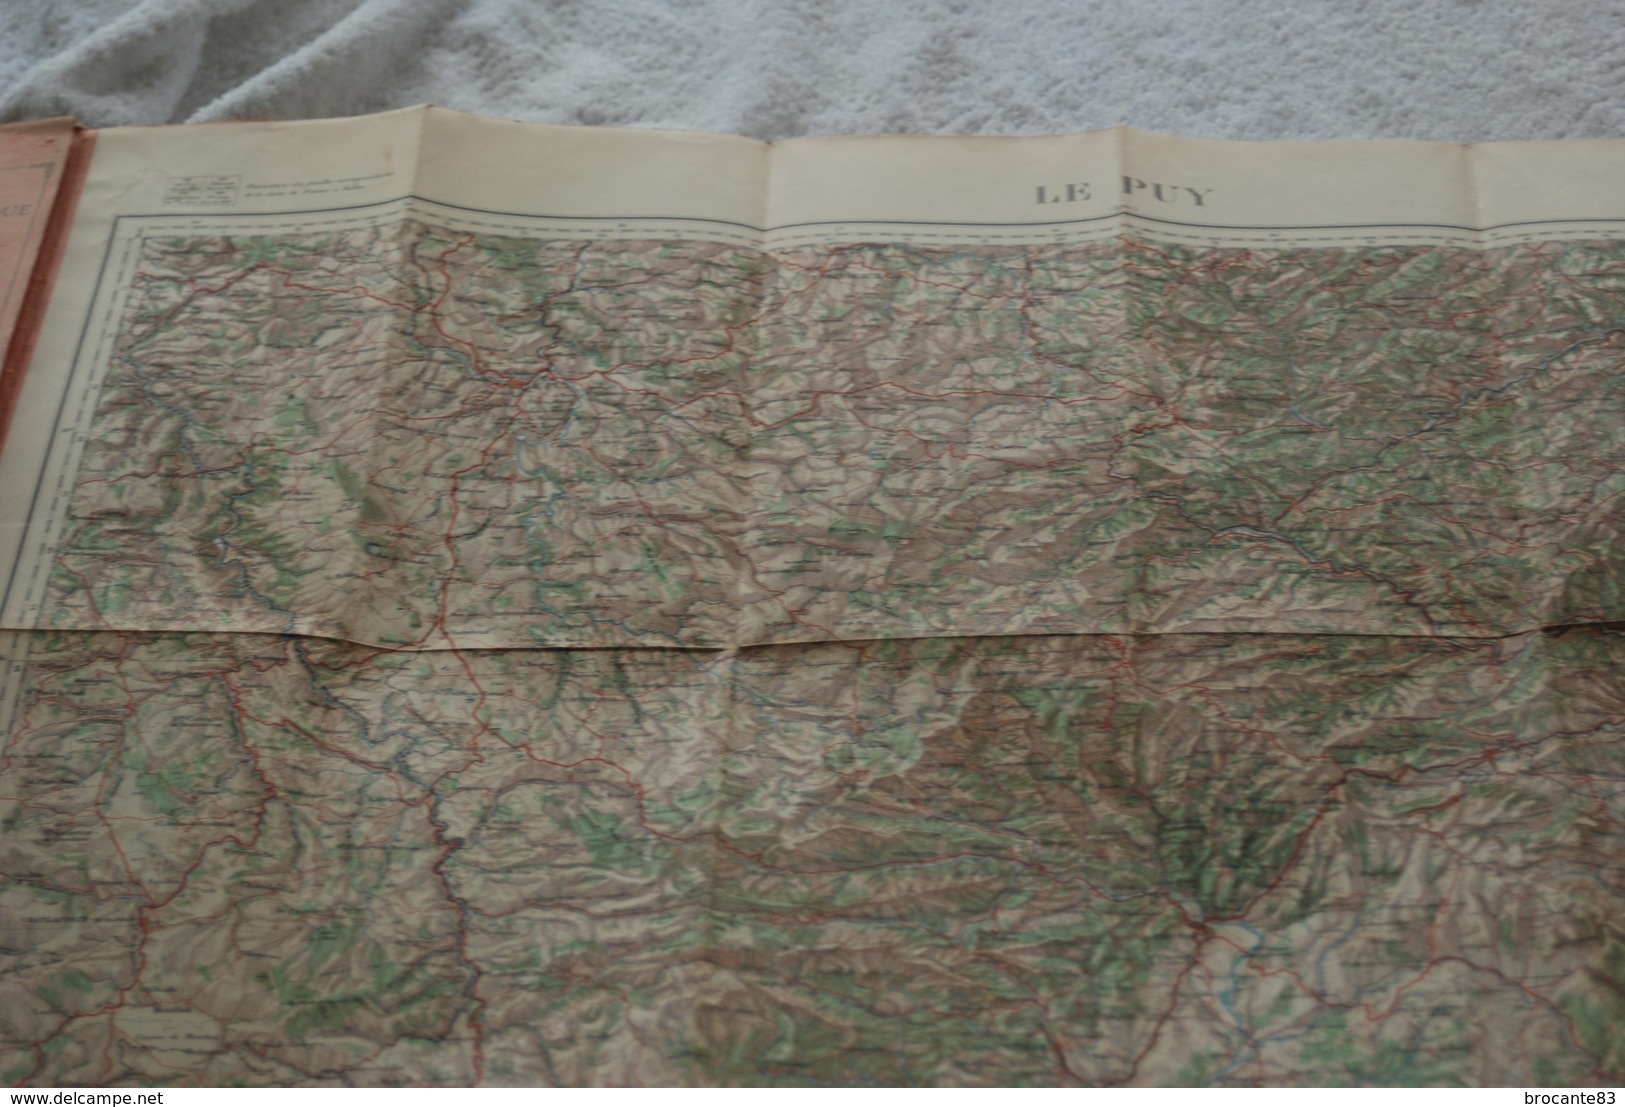 Service Geographique De L'armée Carte De France Au 200000eme Feuille Le Puy - Documents